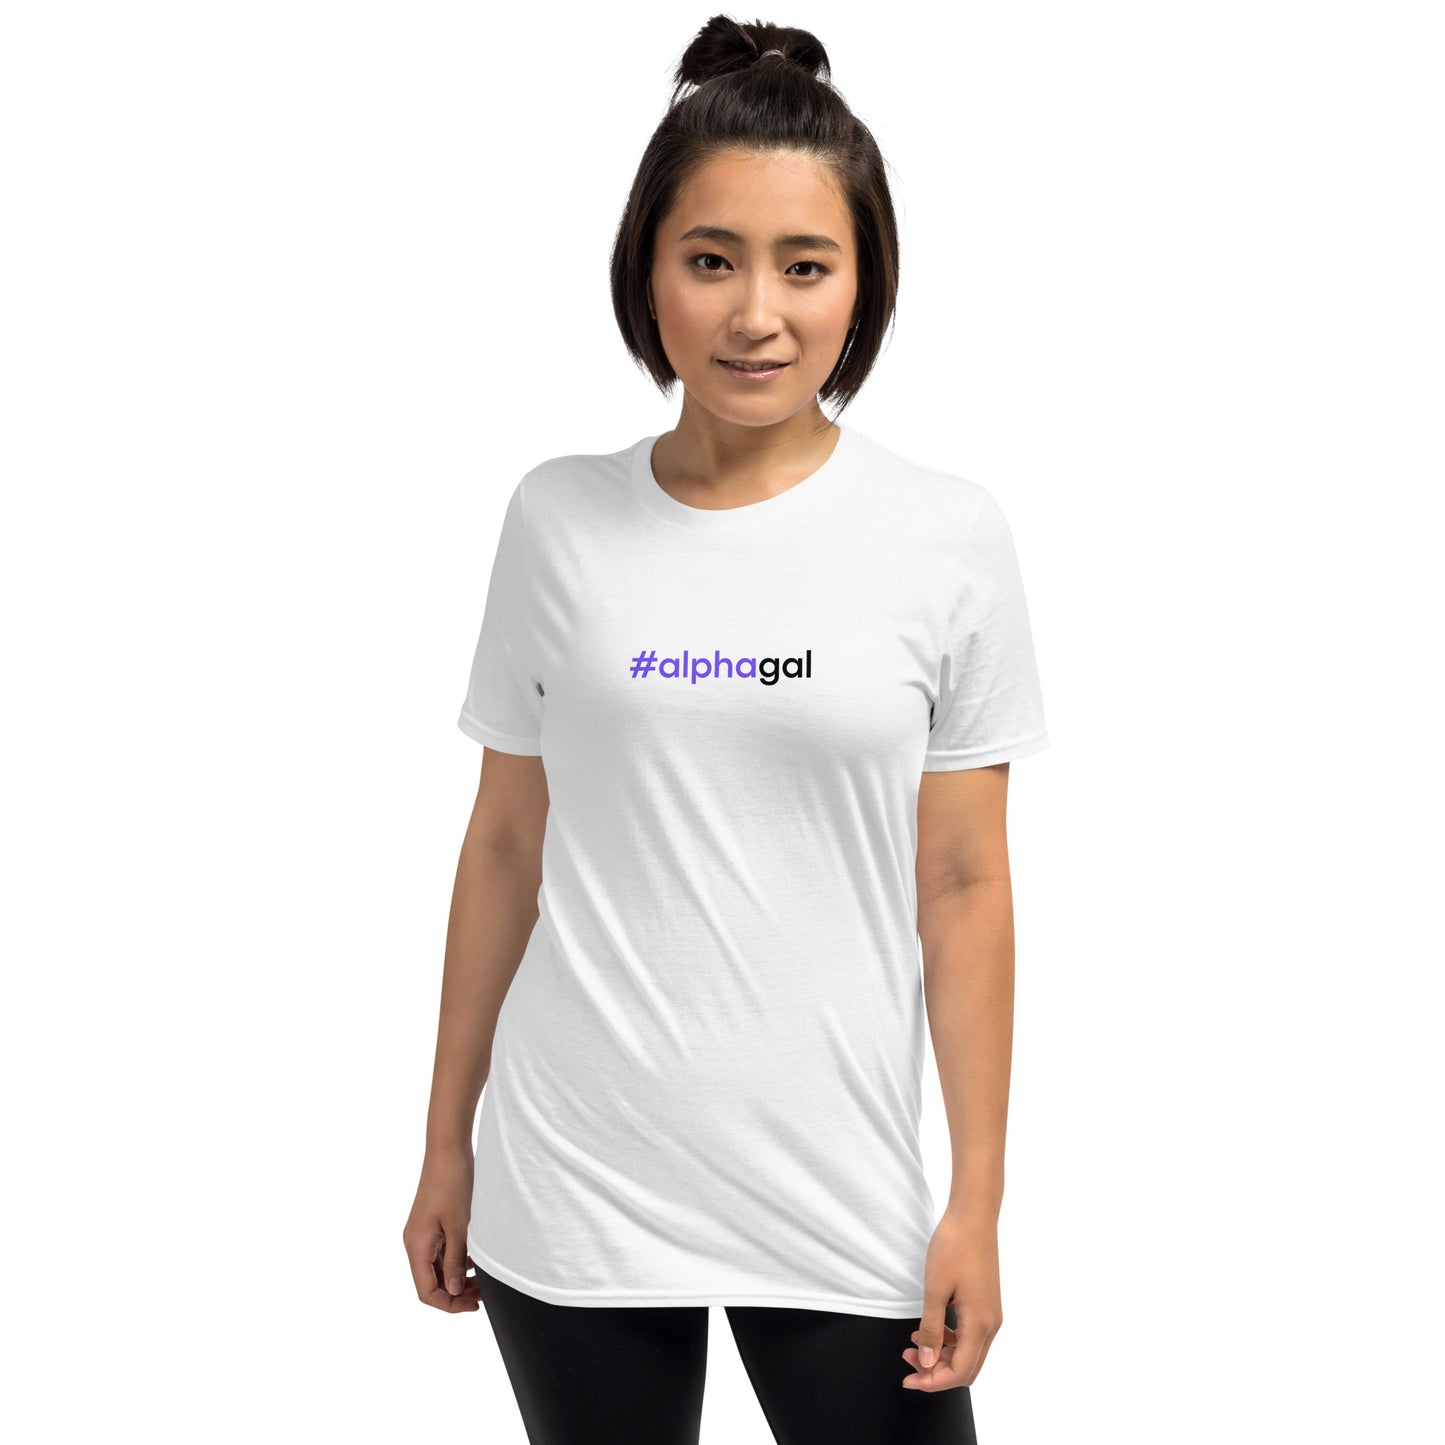 #alphagal | Short-Sleeve Unisex T-Shirt